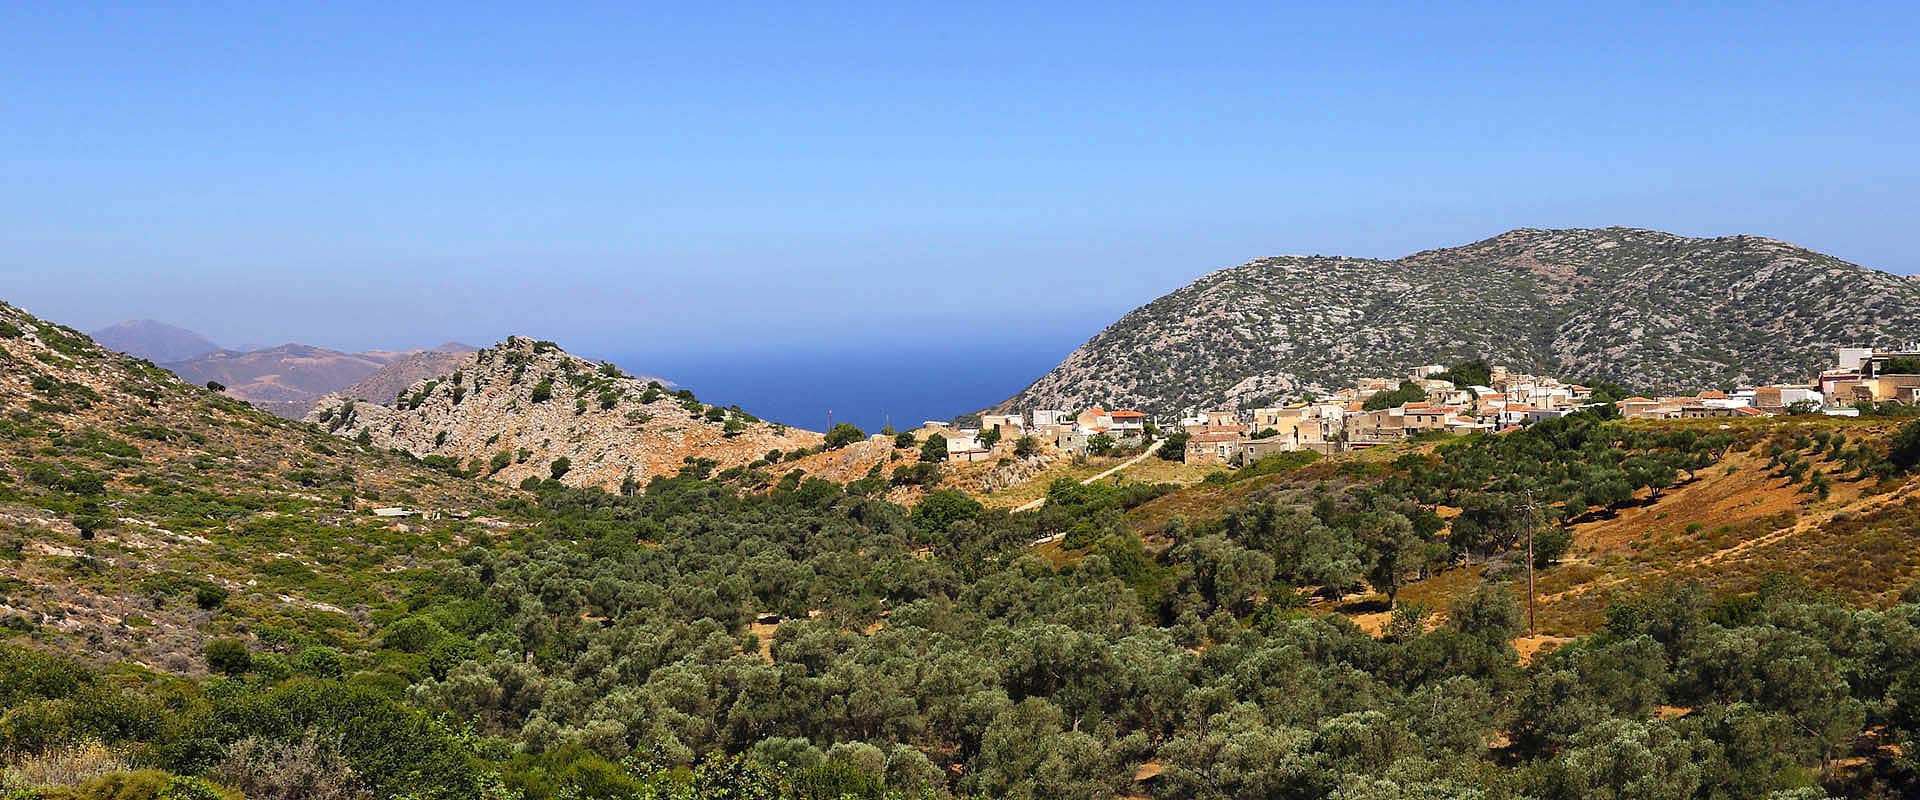 Ekoturystyczne wille hotelowe na Krecie Grecja